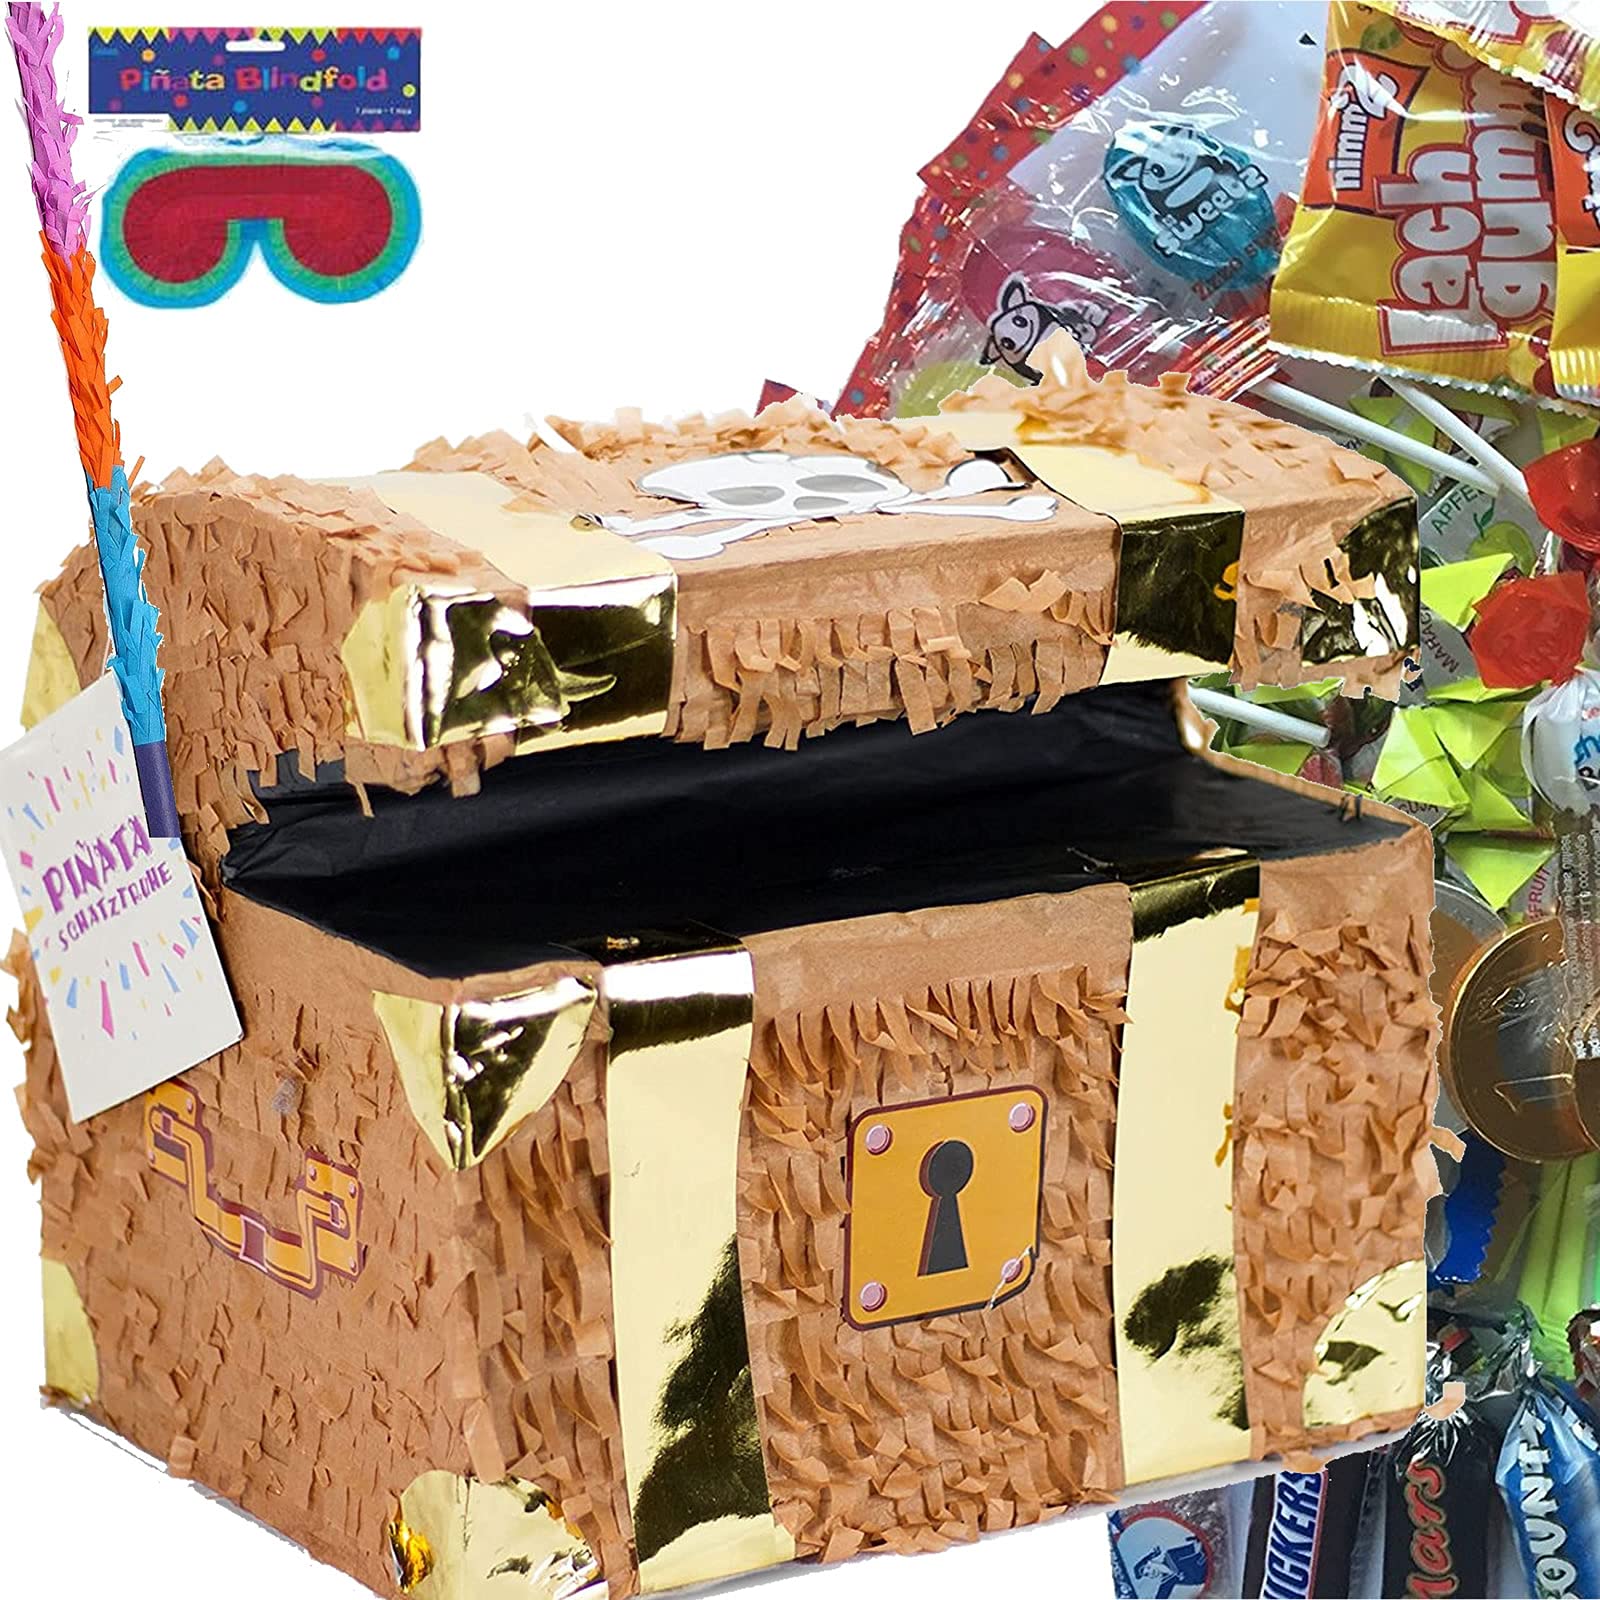 Carpeta Pinata Set: * SCHATZTRUHE * + Maske + Schläger + 100-teiliger Süßigkeiten-Füllung No.1 Handgefertigte Schatzkiste Pinata | Tolles Spiel für Kindergeburtstag und Motto-Party